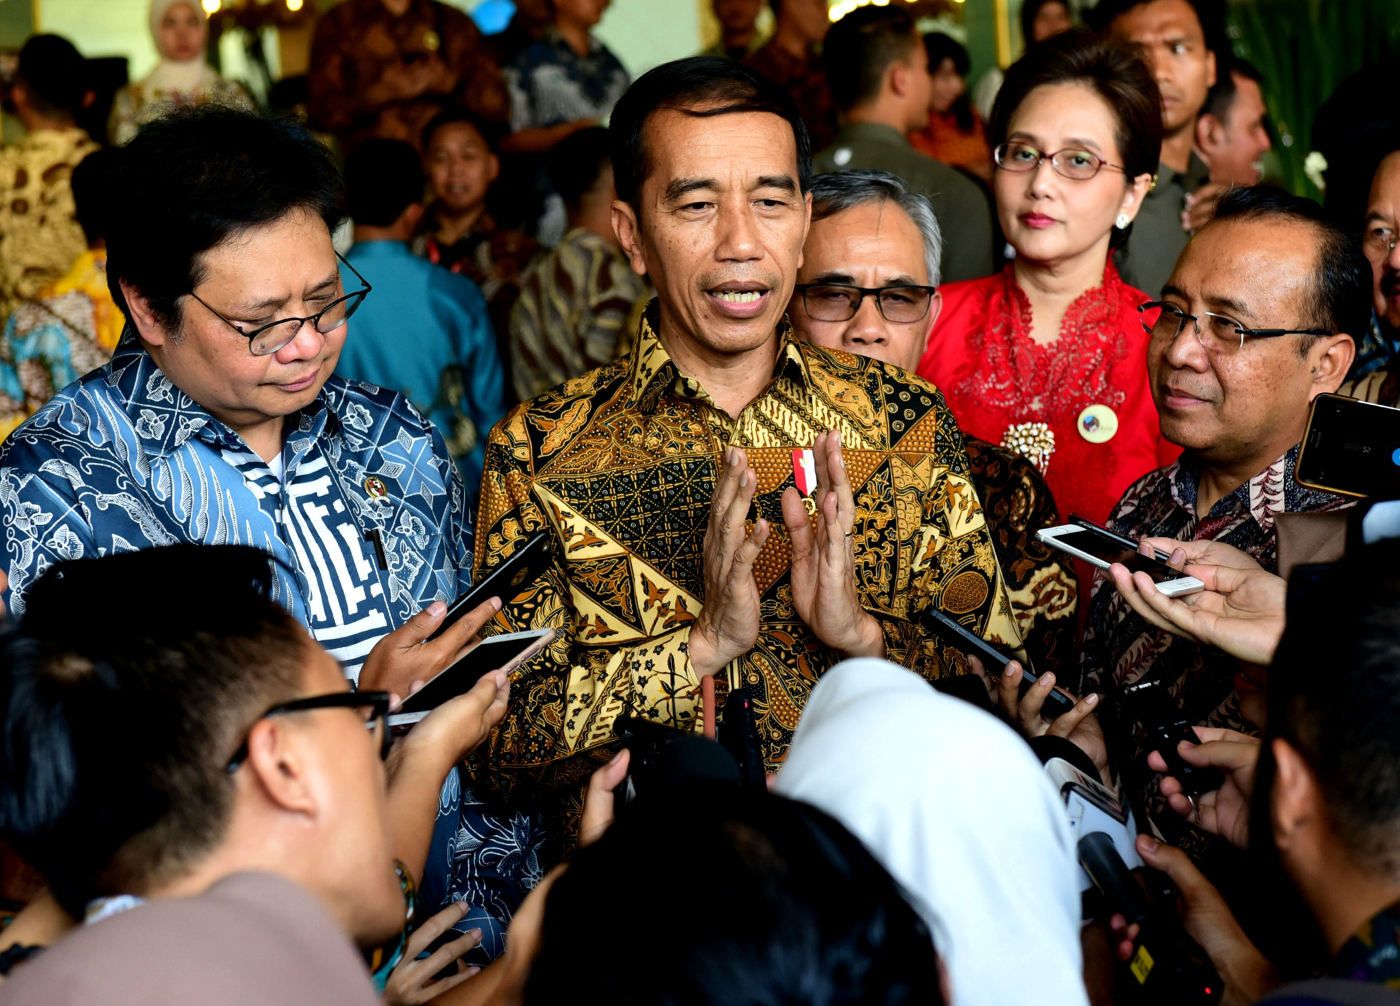 Presiden Jokowi Akui Relawan Usulkan Pelantikan Dimajukan Tanggal 19 Oktober  Sumber: https://setkab.go.id/presiden-jokowi-akui-relawan-usulkan-pelantikan-dimajukan-tanggal-19-oktober/